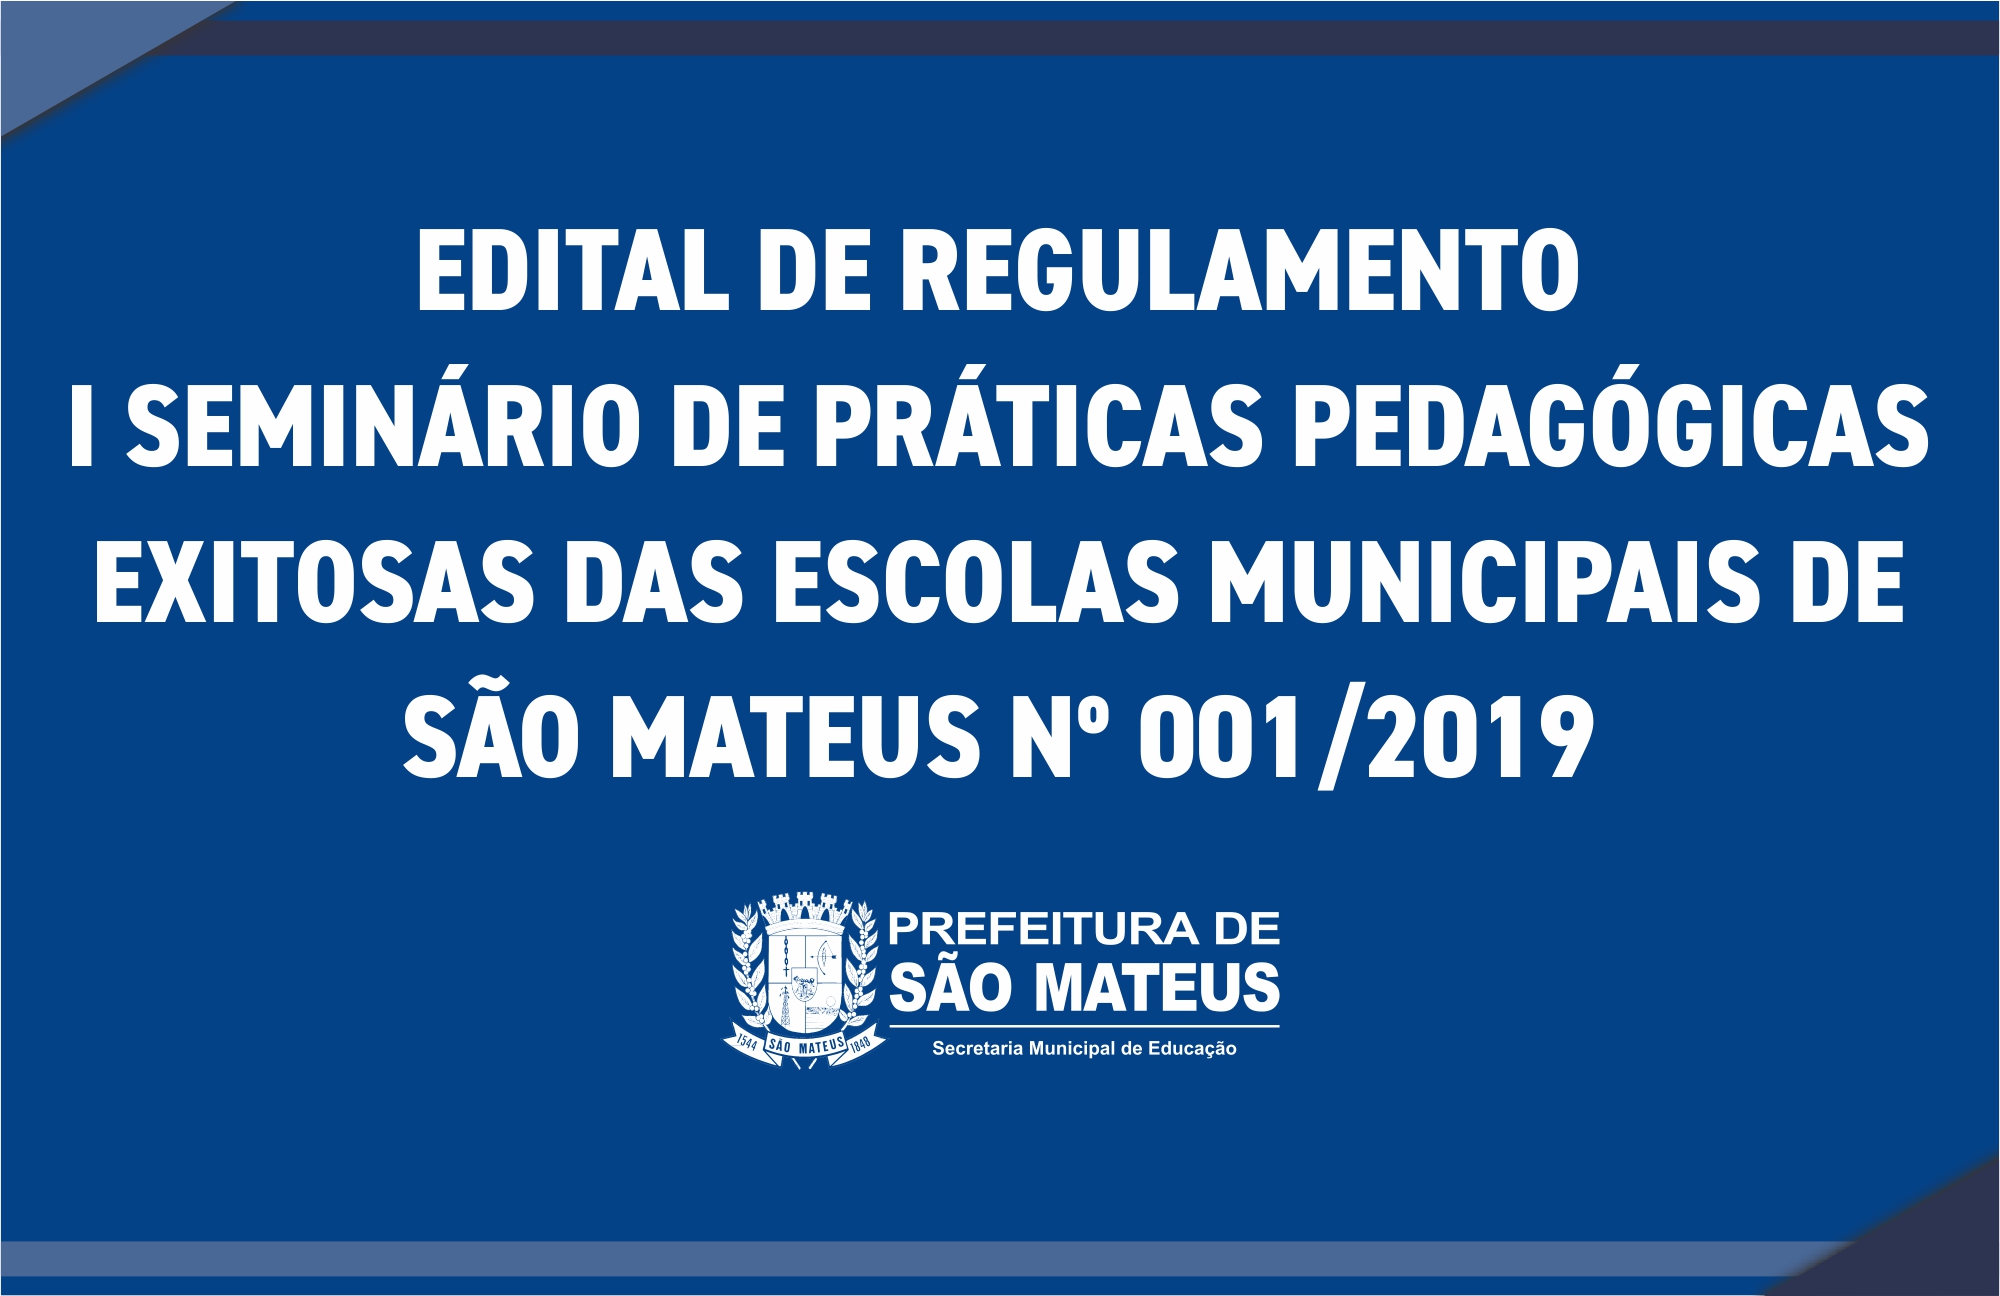 EDITAL DE REGULAMENTO I SEMINÁRIO DE PRÁTICAS PEDAGÓGICAS EXITOSAS DAS ESCOLAS MUNICIPAIS DE SÃO MATEUS Nº 001/2019